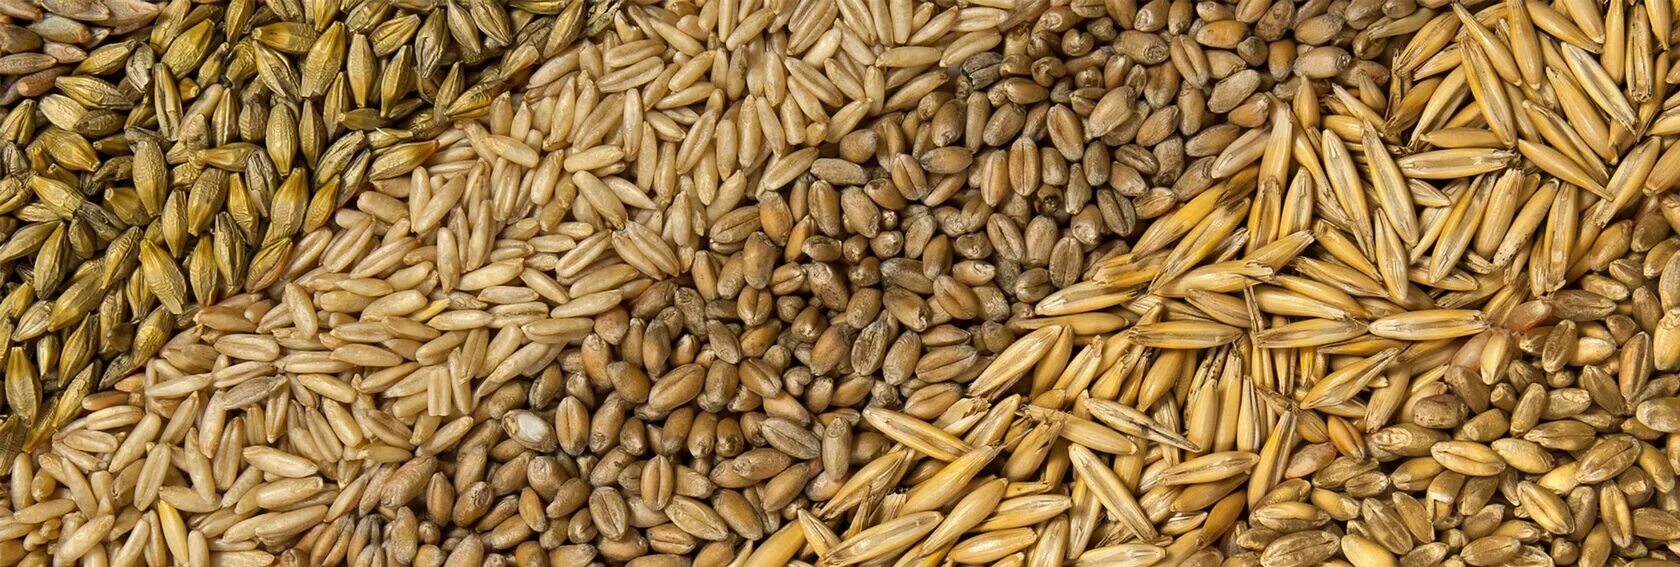 Овес горох пшеница ячмень